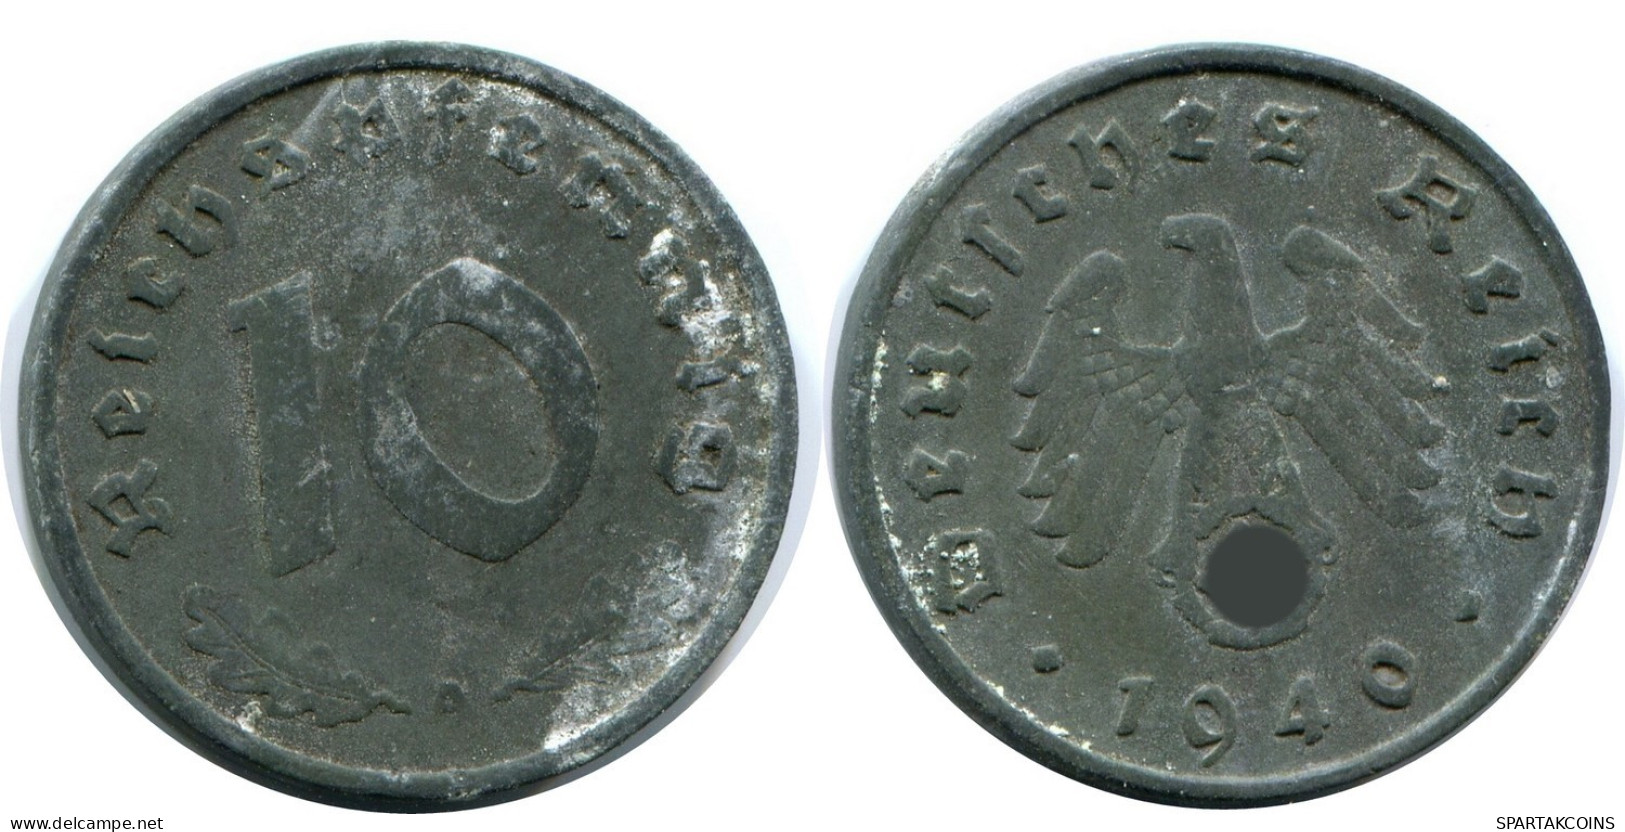 10 REICHSPFENNIG 1940 A GERMANY Coin #AW968.U.A - 10 Reichspfennig